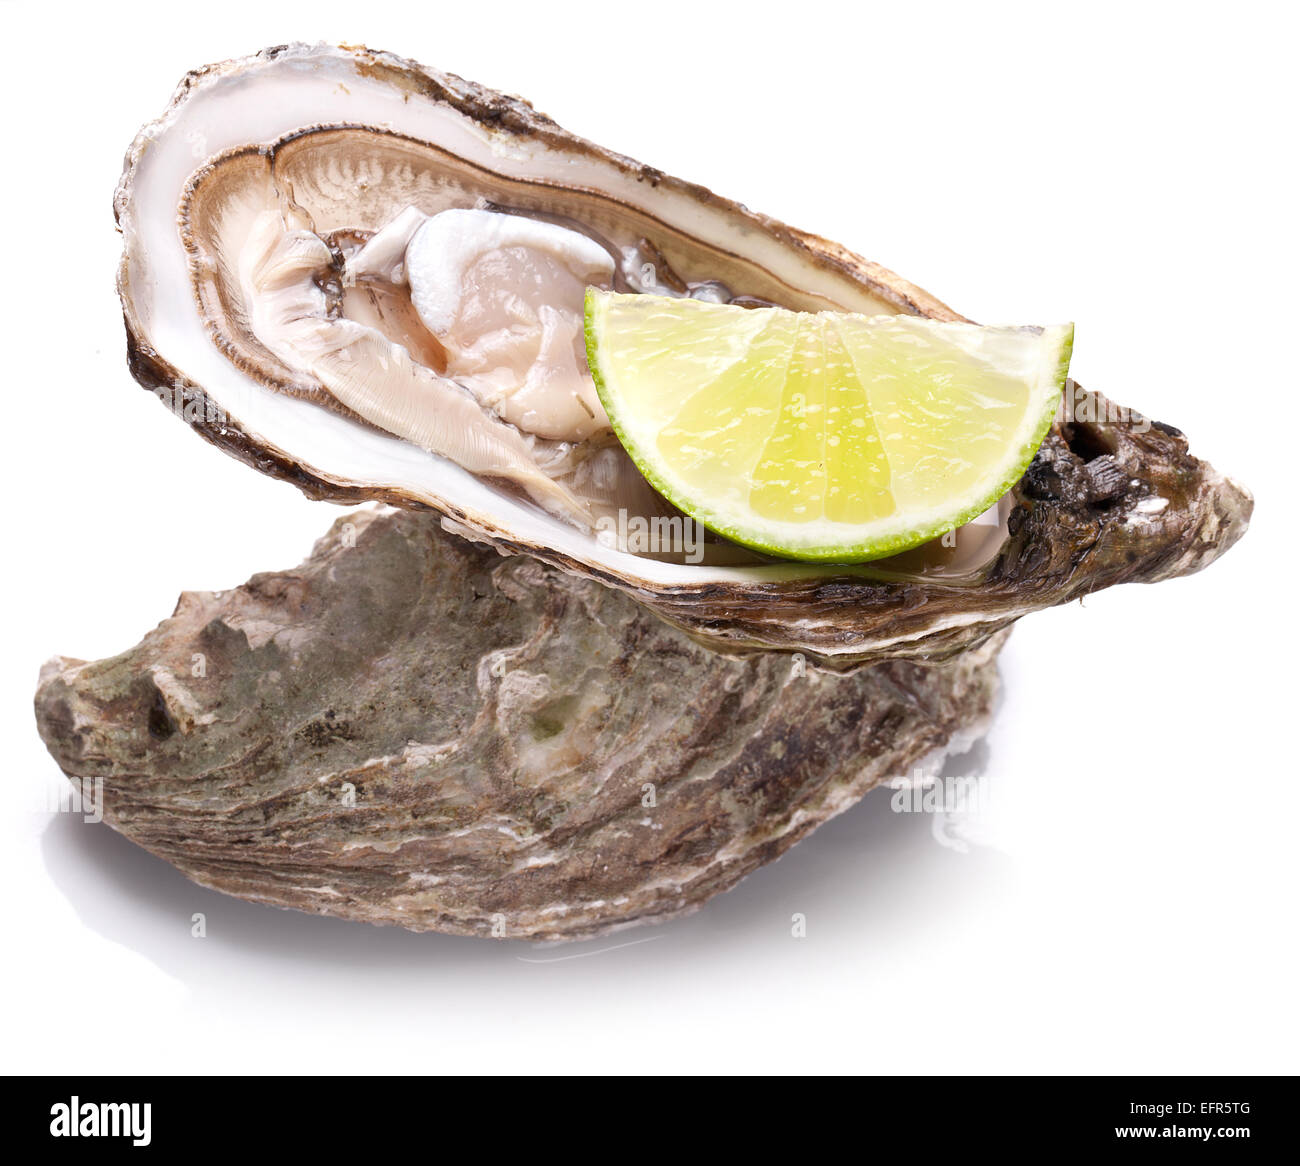 Rohe Austern und Zitrone isoliert auf einem weißen Hintergrund. Stockfoto